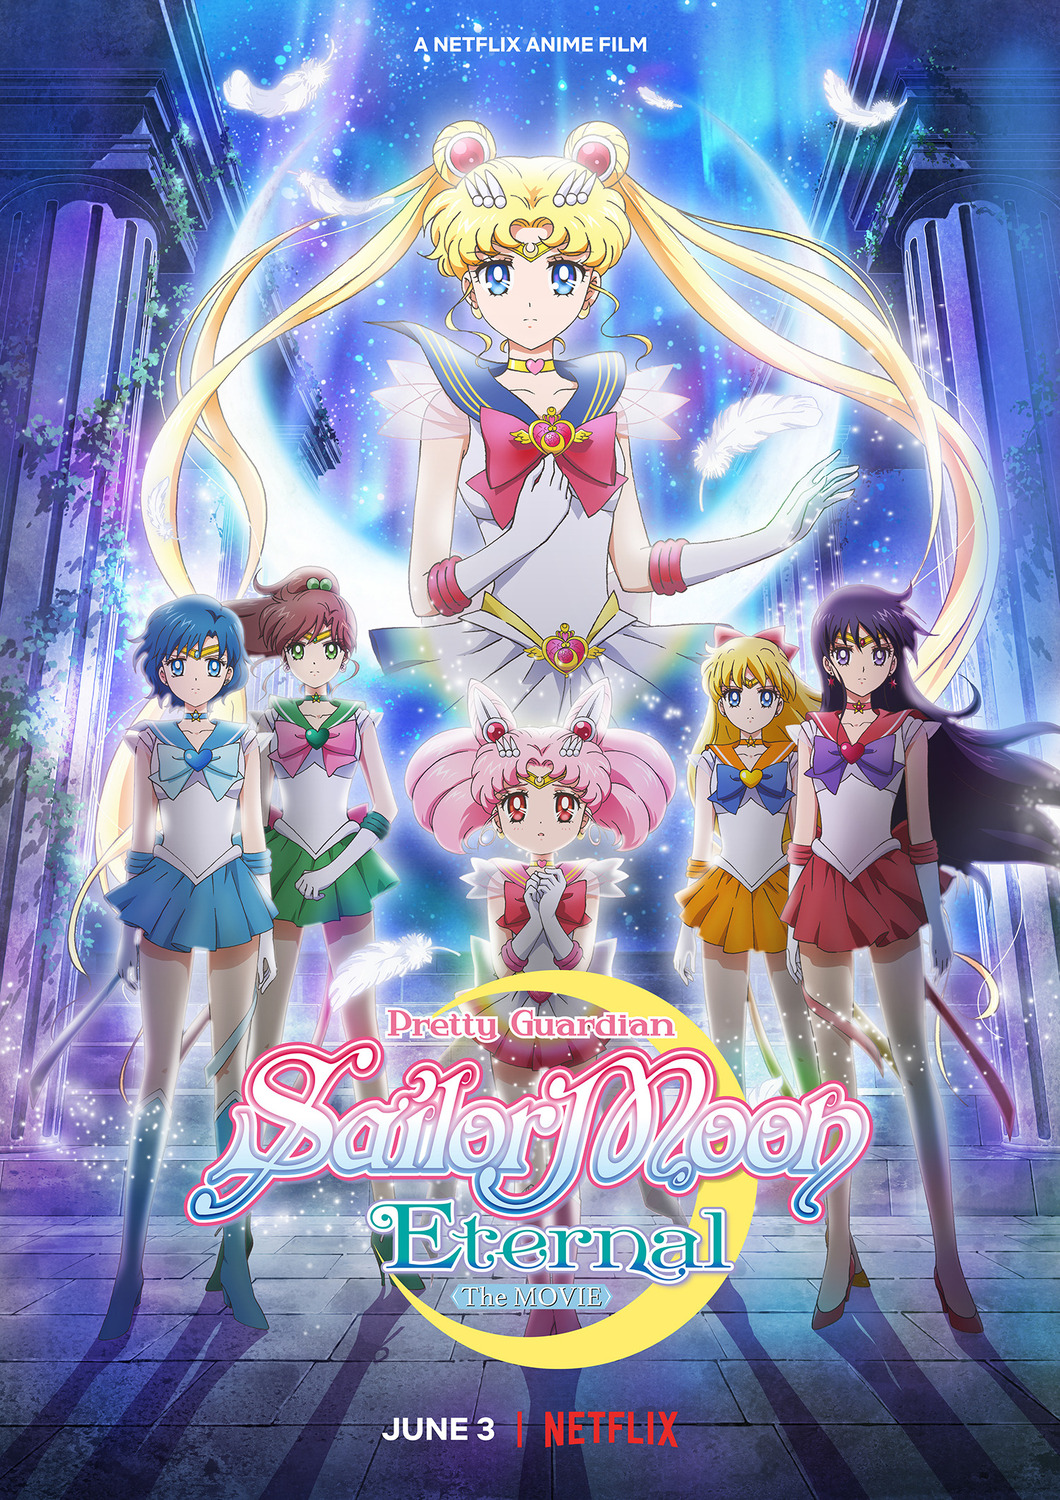 Extra Large Movie Poster Image for Gekijouban Bishoujo Senshi Sailor Moon Eternal (#2 of 4)